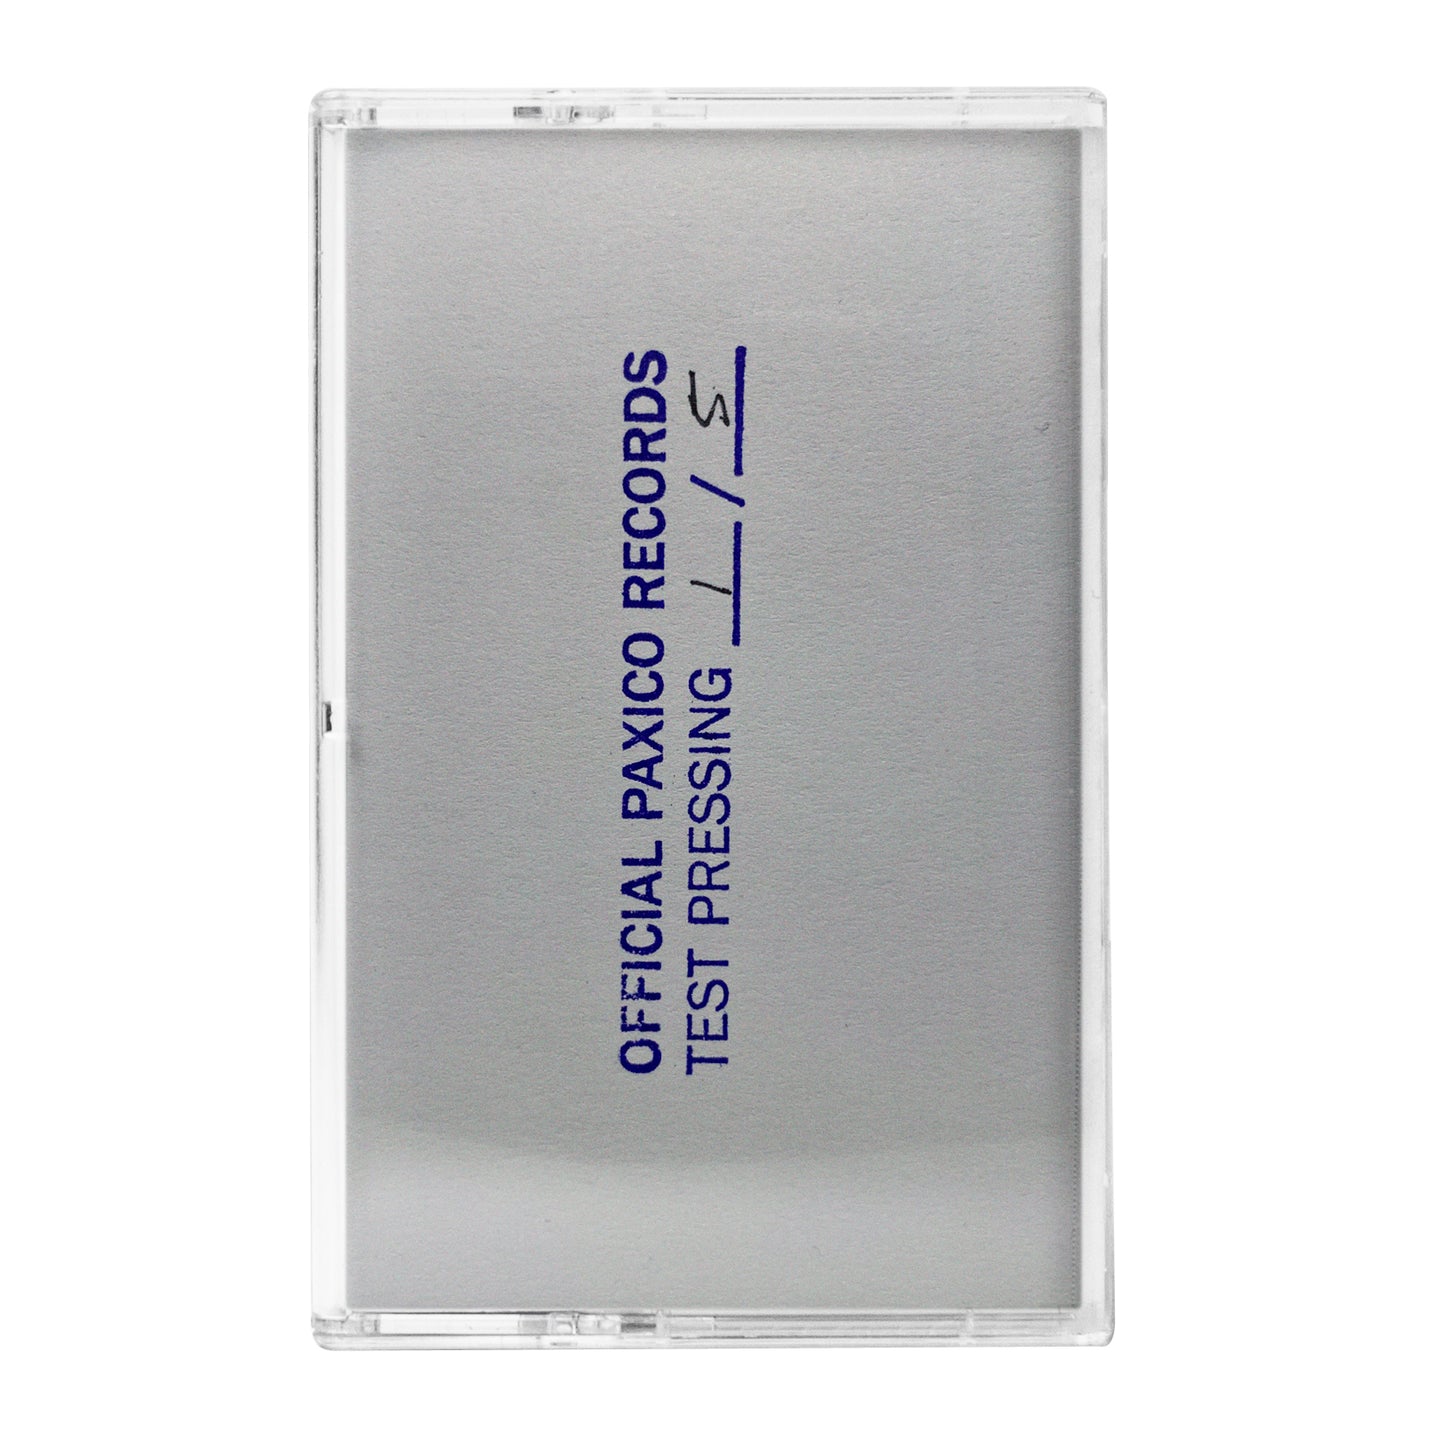 PL8S Volume 1—4 (Cassette)